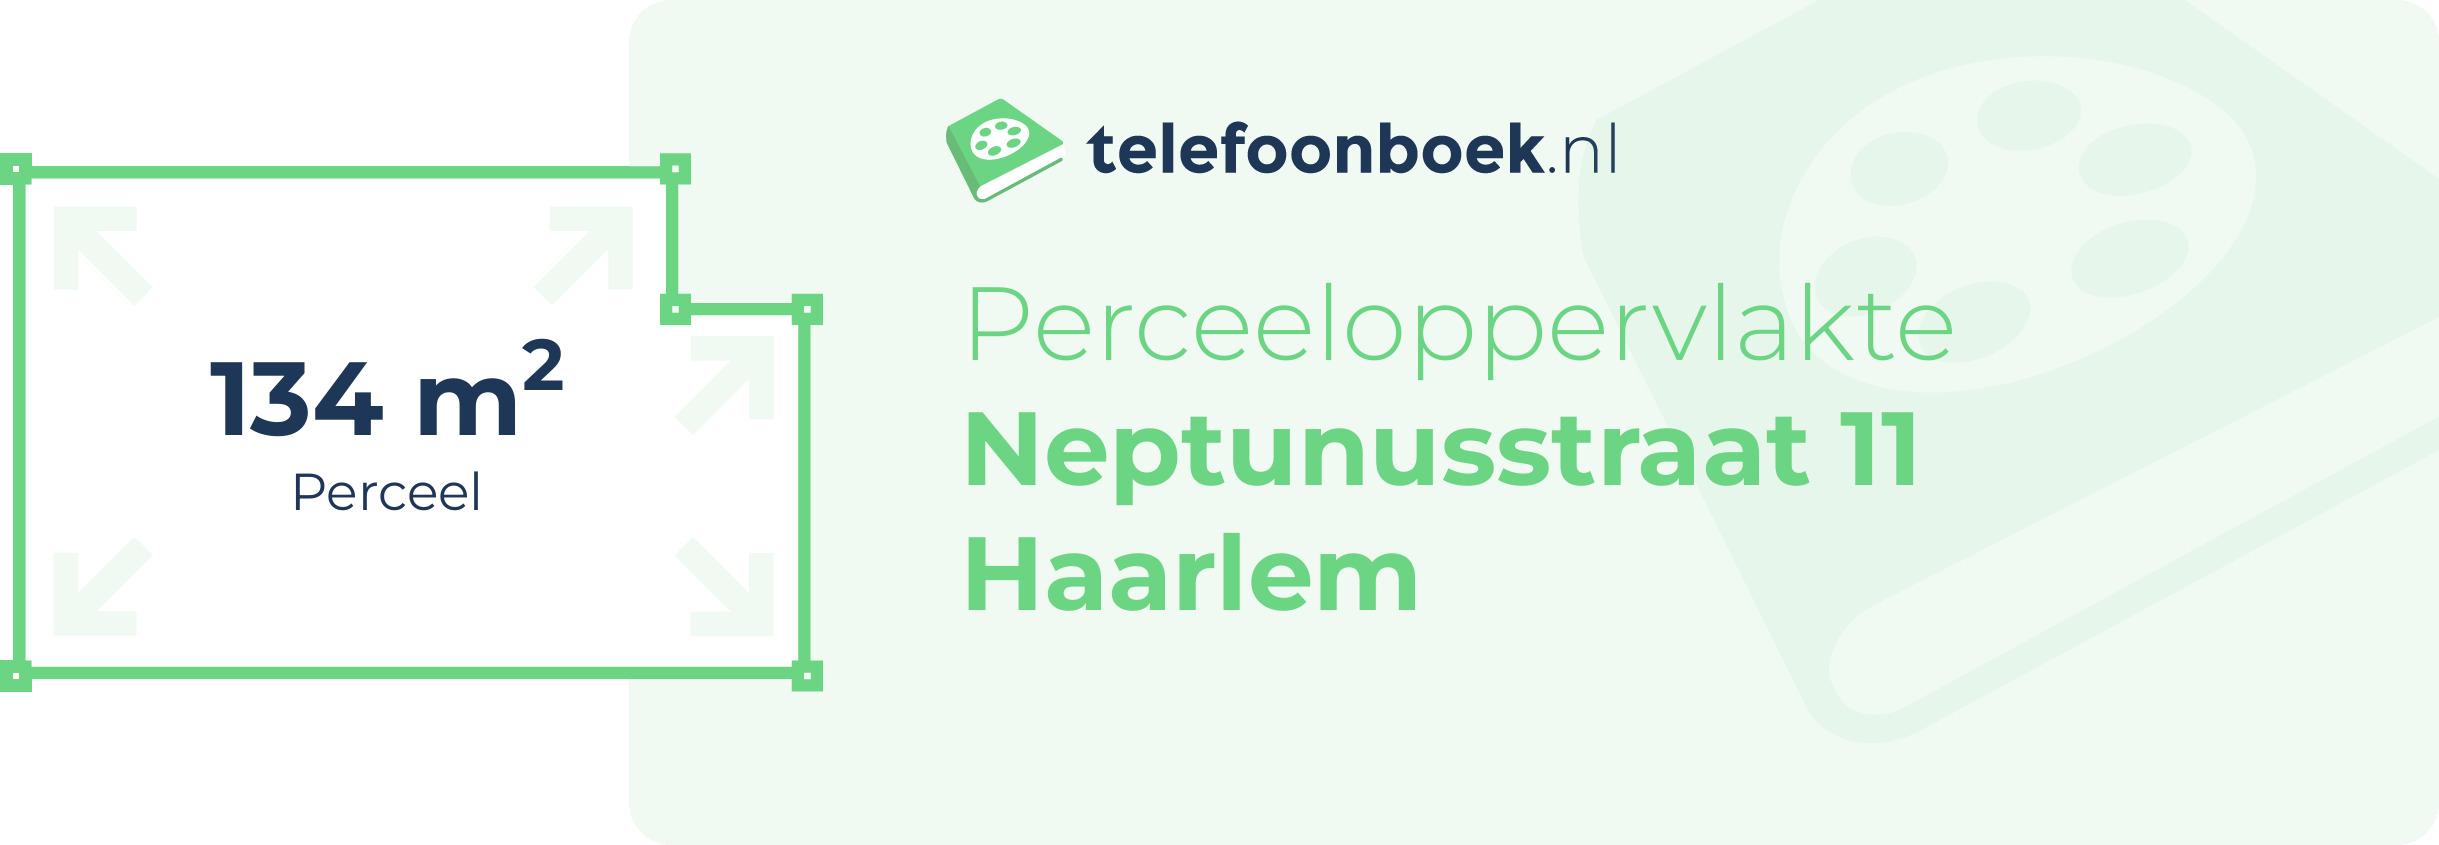 Perceeloppervlakte Neptunusstraat 11 Haarlem